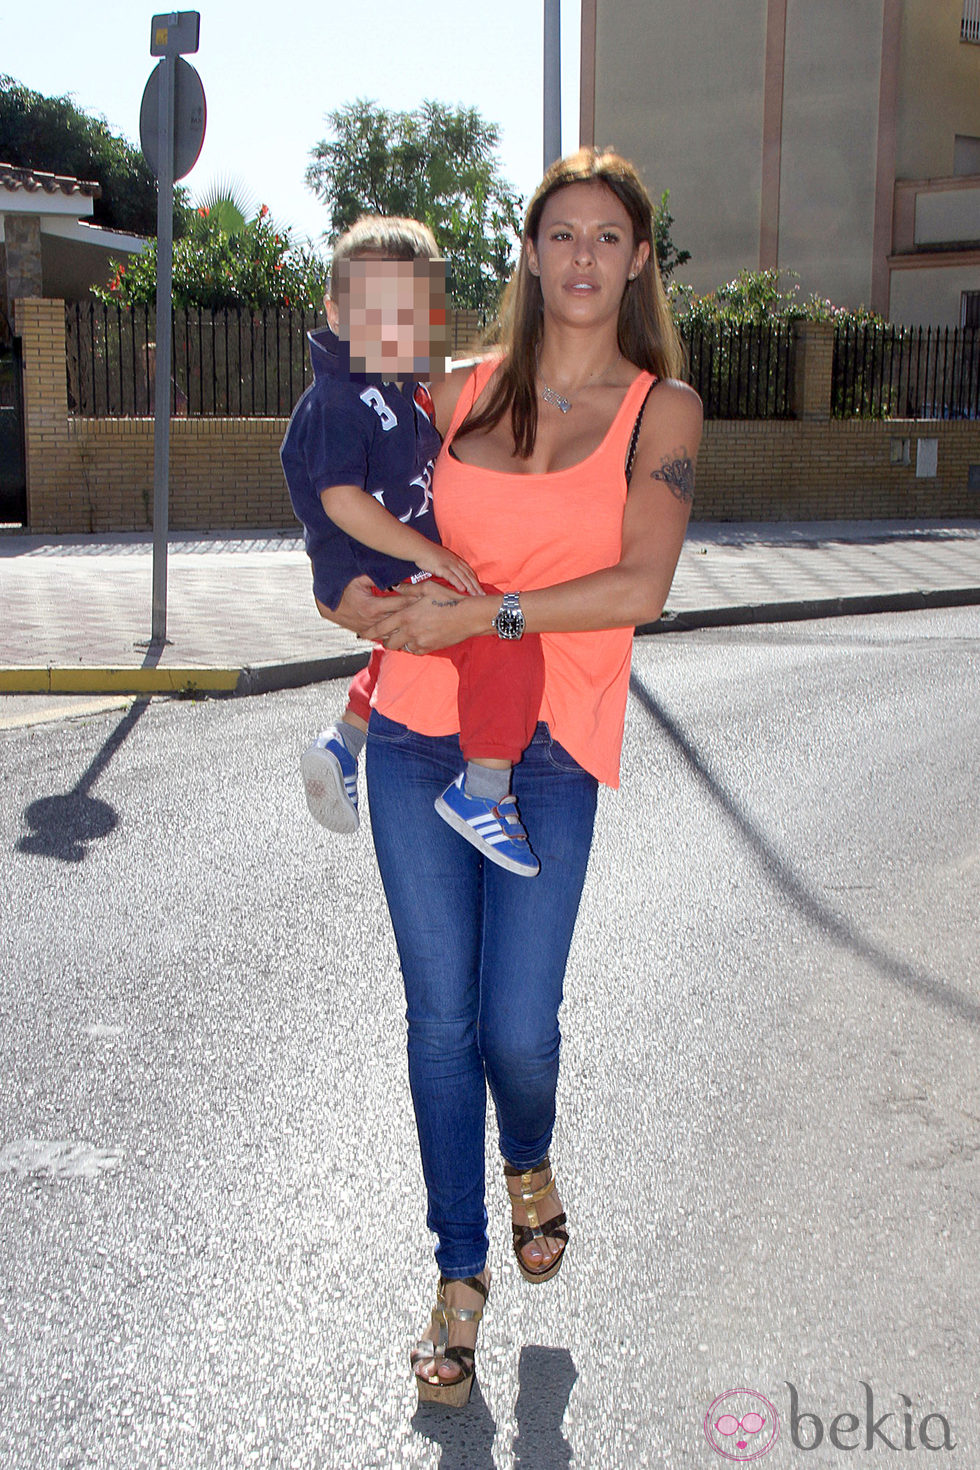 Techi con su hijo en brazos por las calles de Sevilla